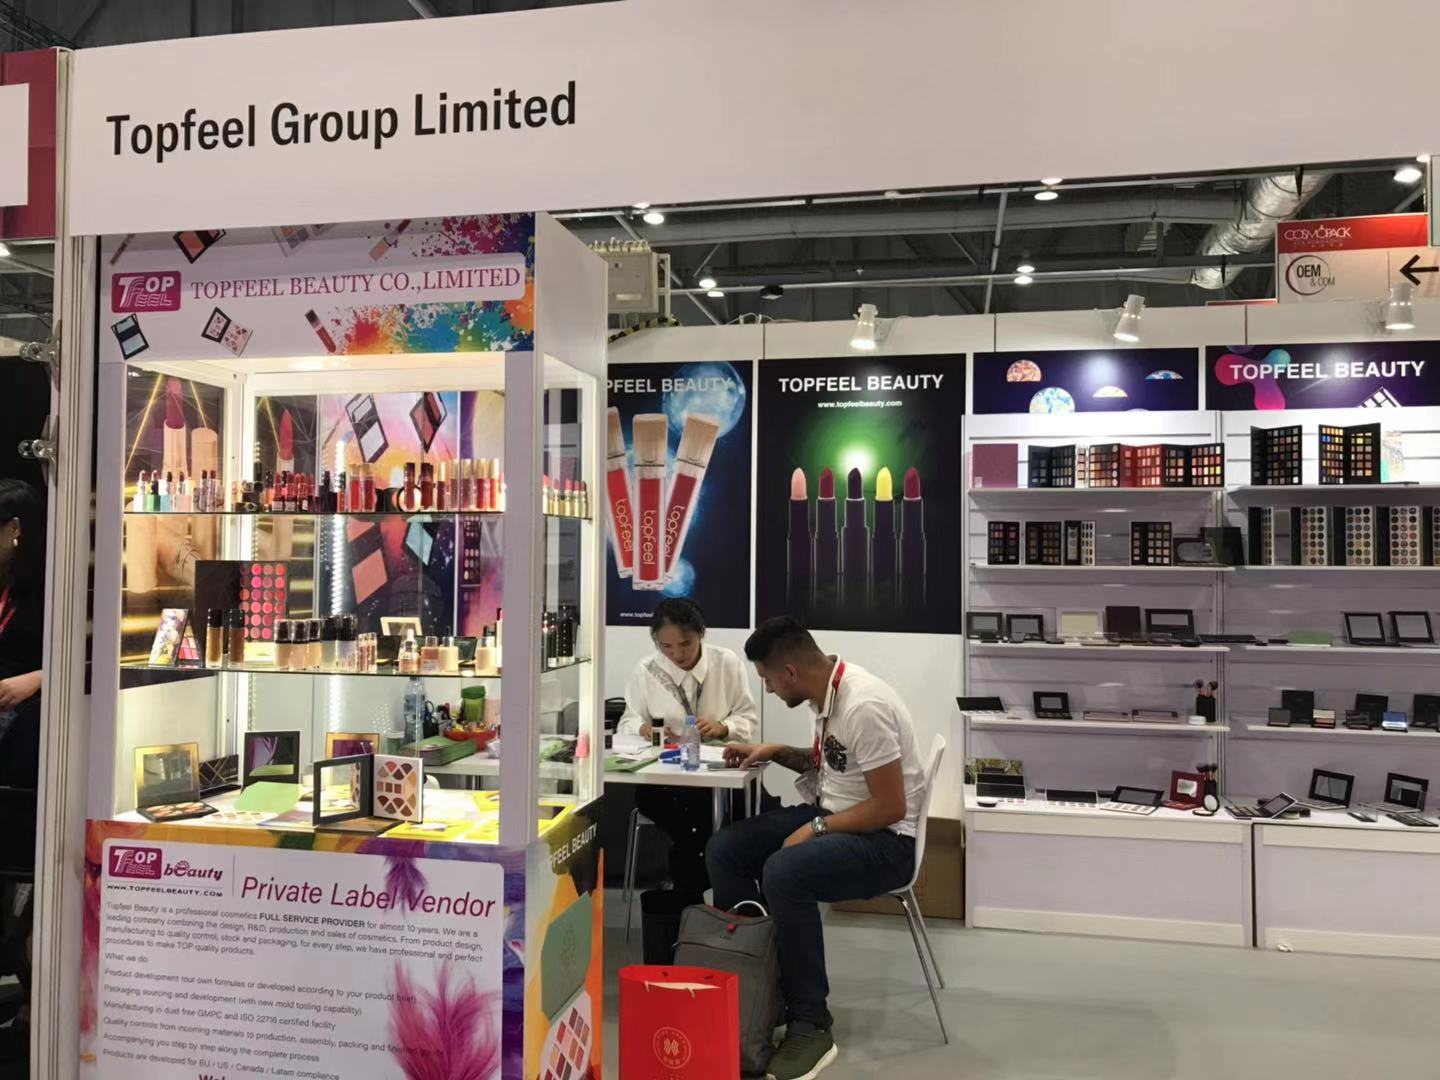 2019 hk beauty fair topfeelbeauty